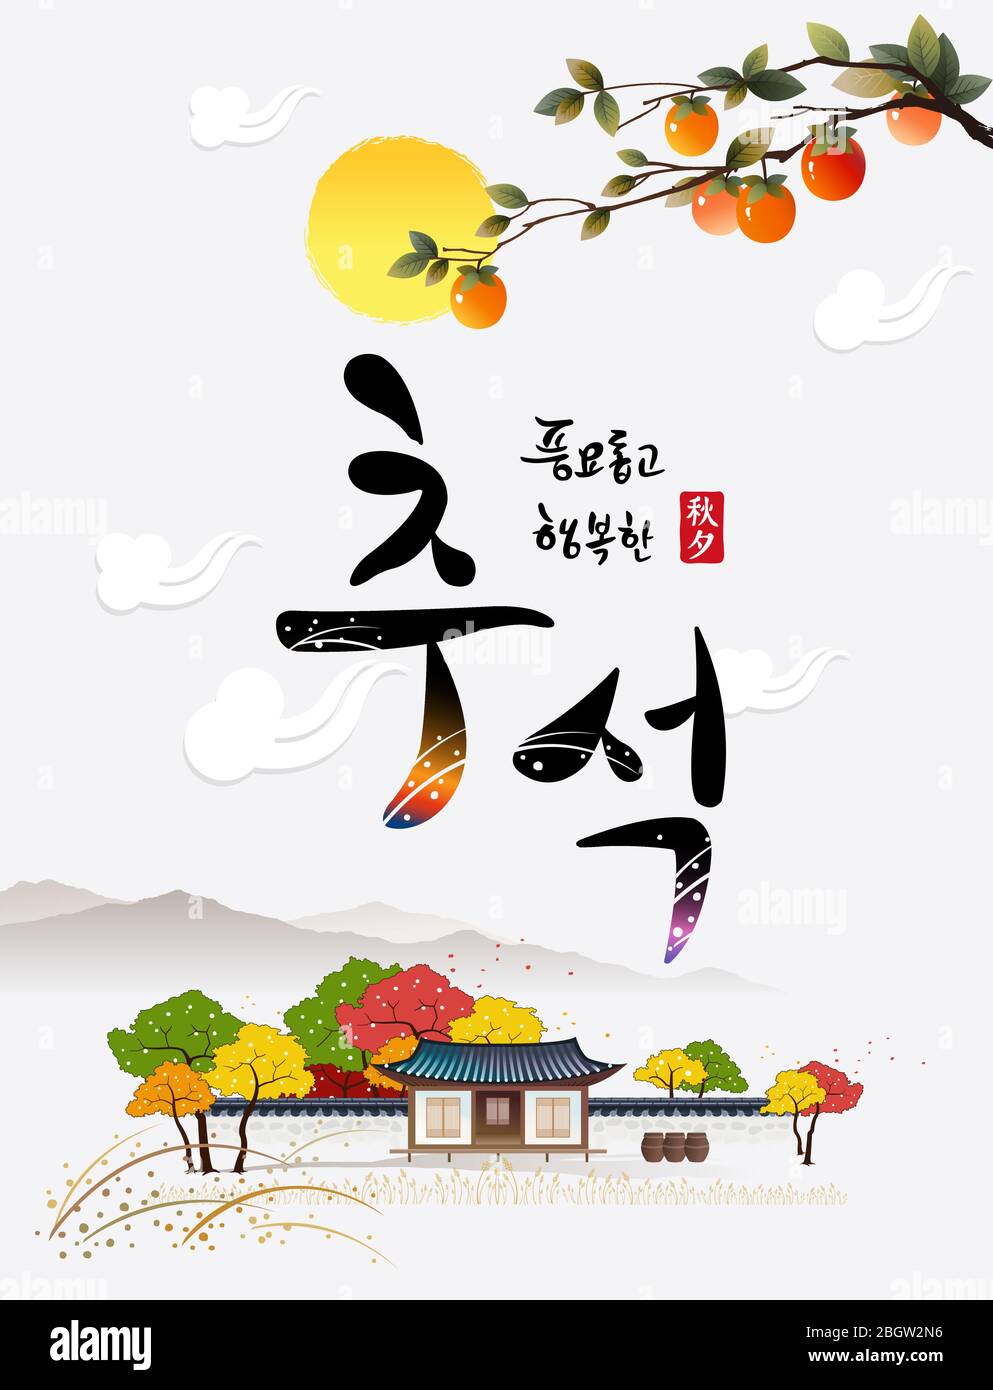 Reiche Ernte und glücklich Chuseok, Hangawi, Koreanisch Übersetzung. Herbstlandschaft, Persimmonbaum und traditionelles Haus. Stock Vektor